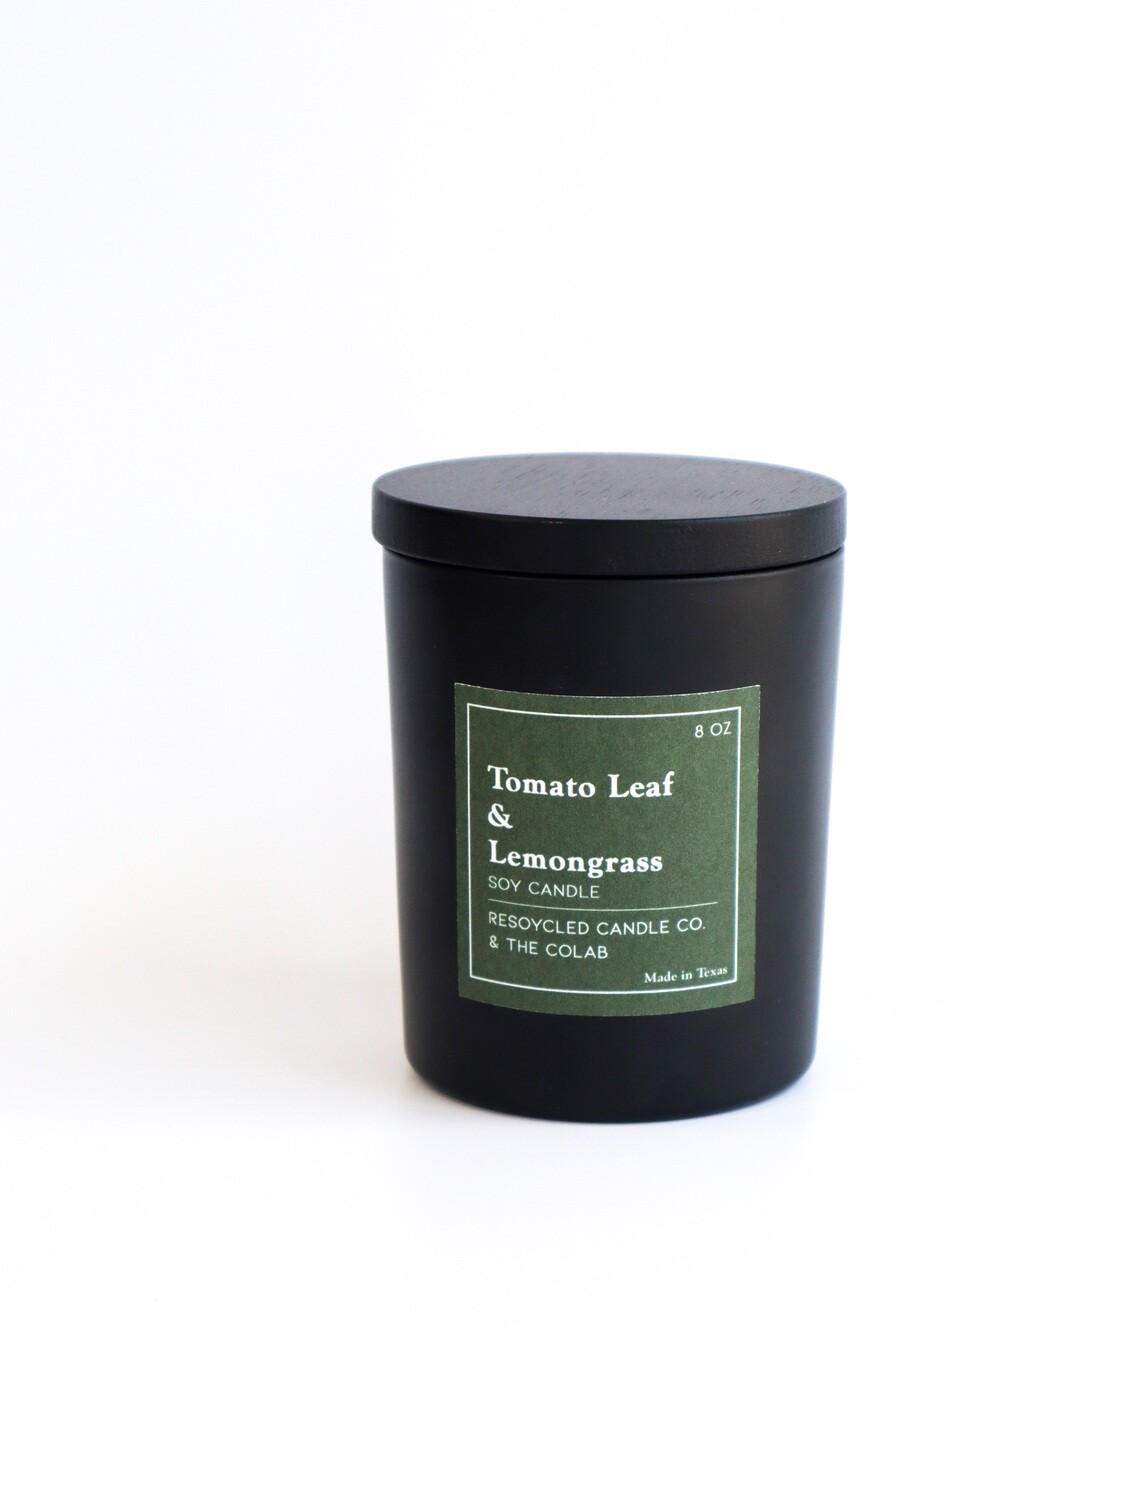 Tomato Leaf & Lemongrass Candle